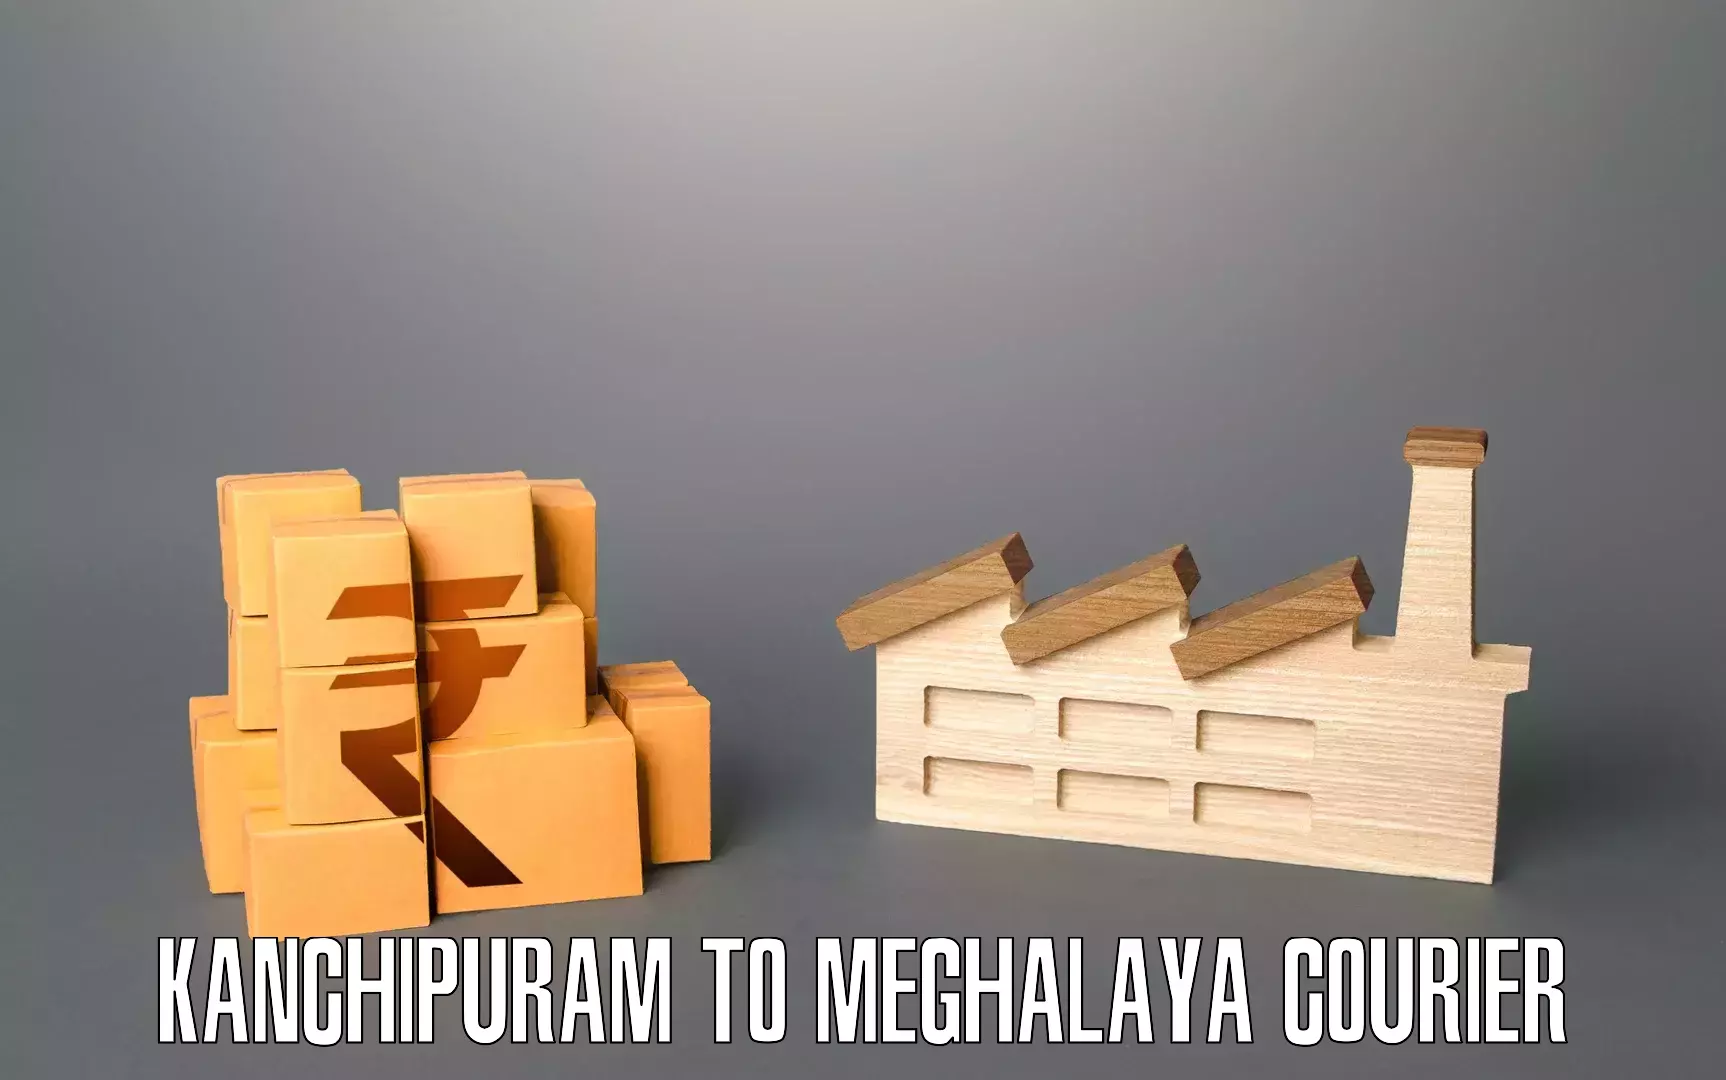 Furniture moving experts Kanchipuram to Cherrapunji